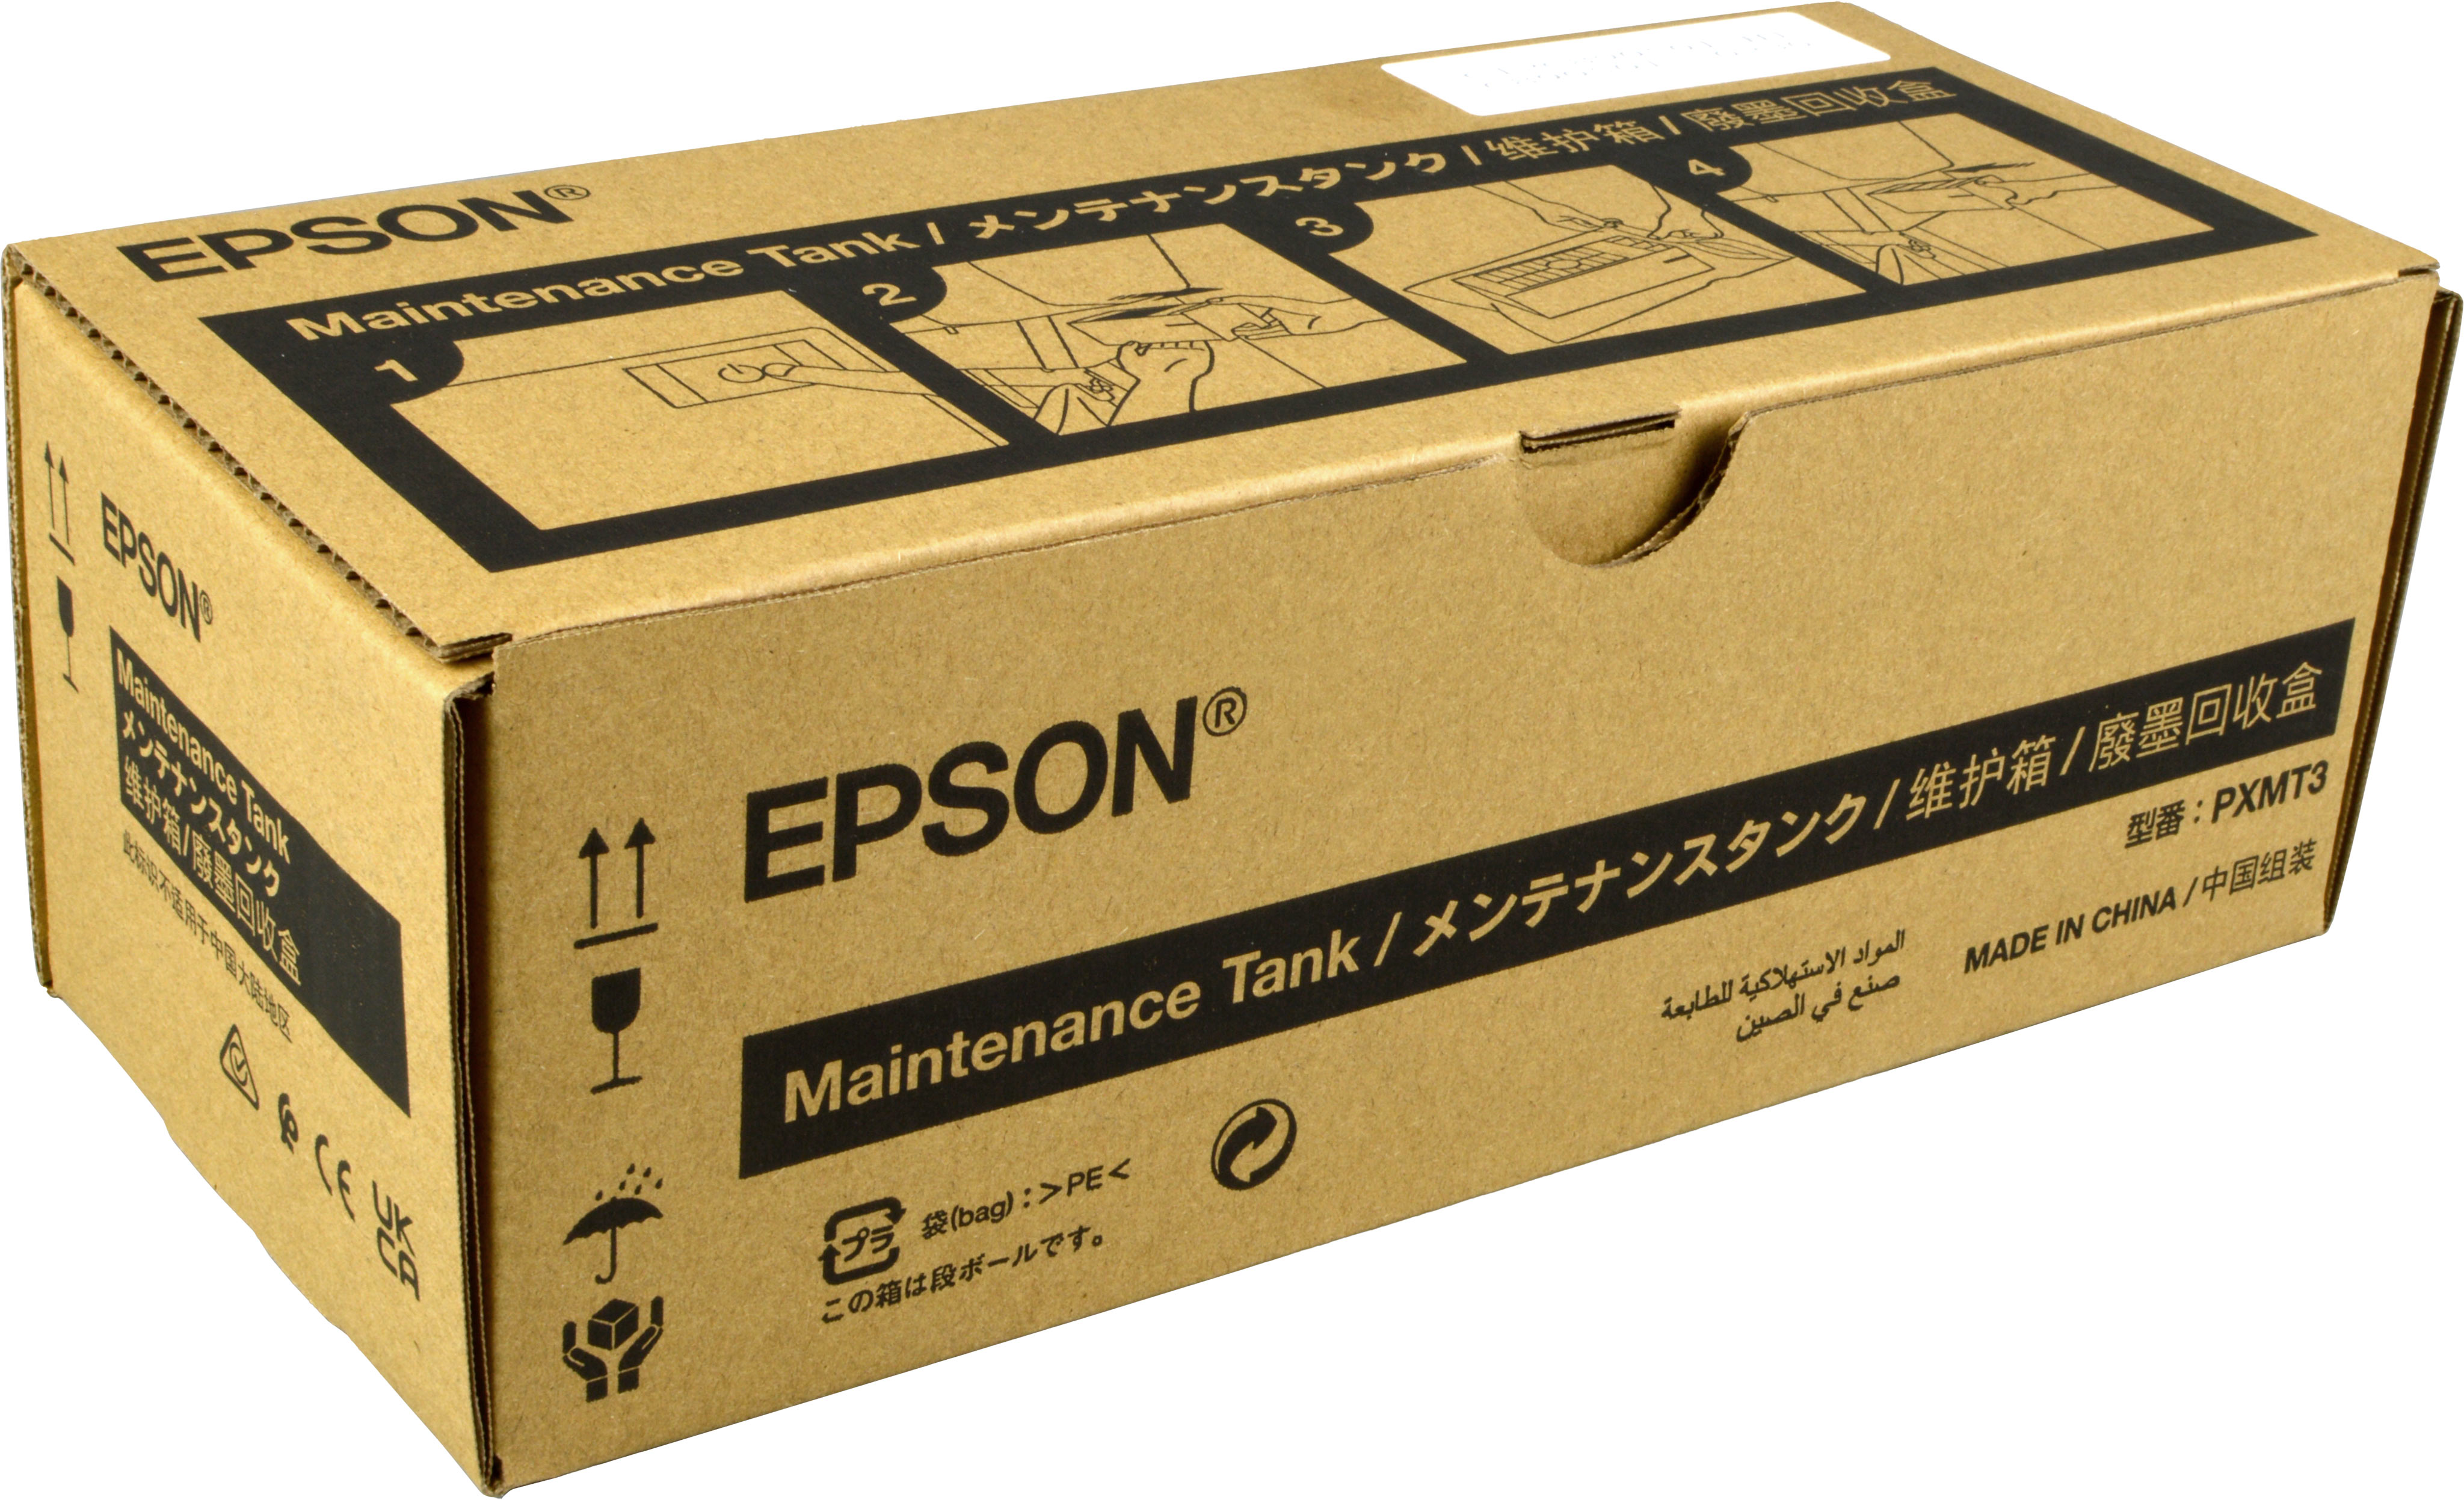 Epson Wartungsbox C12C890501